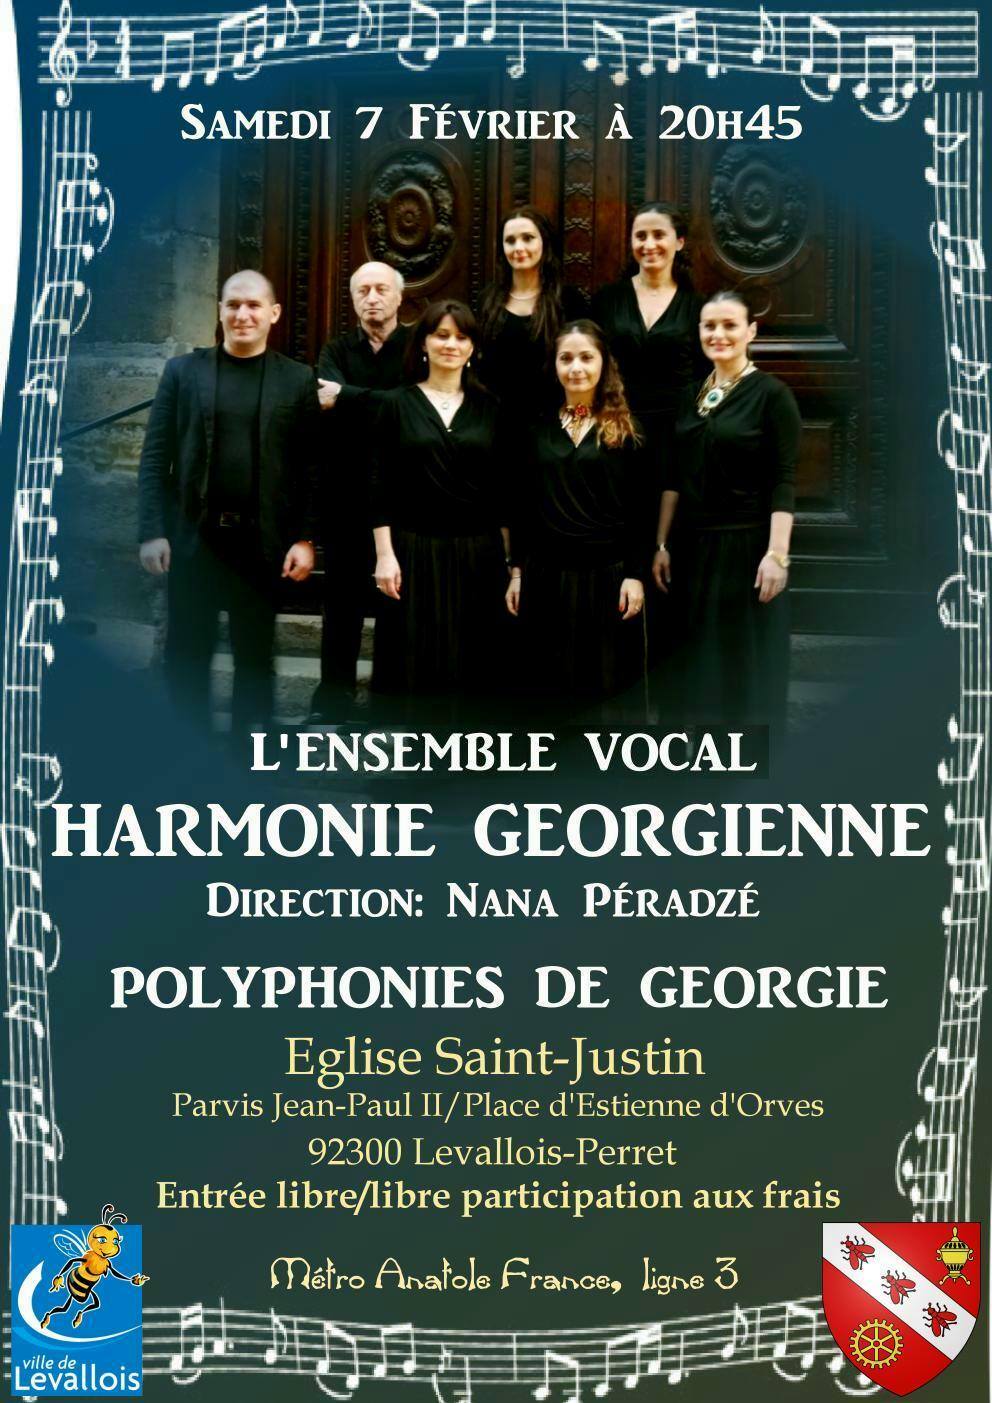 Un concert de l’ensemble Harmonie géorgienne